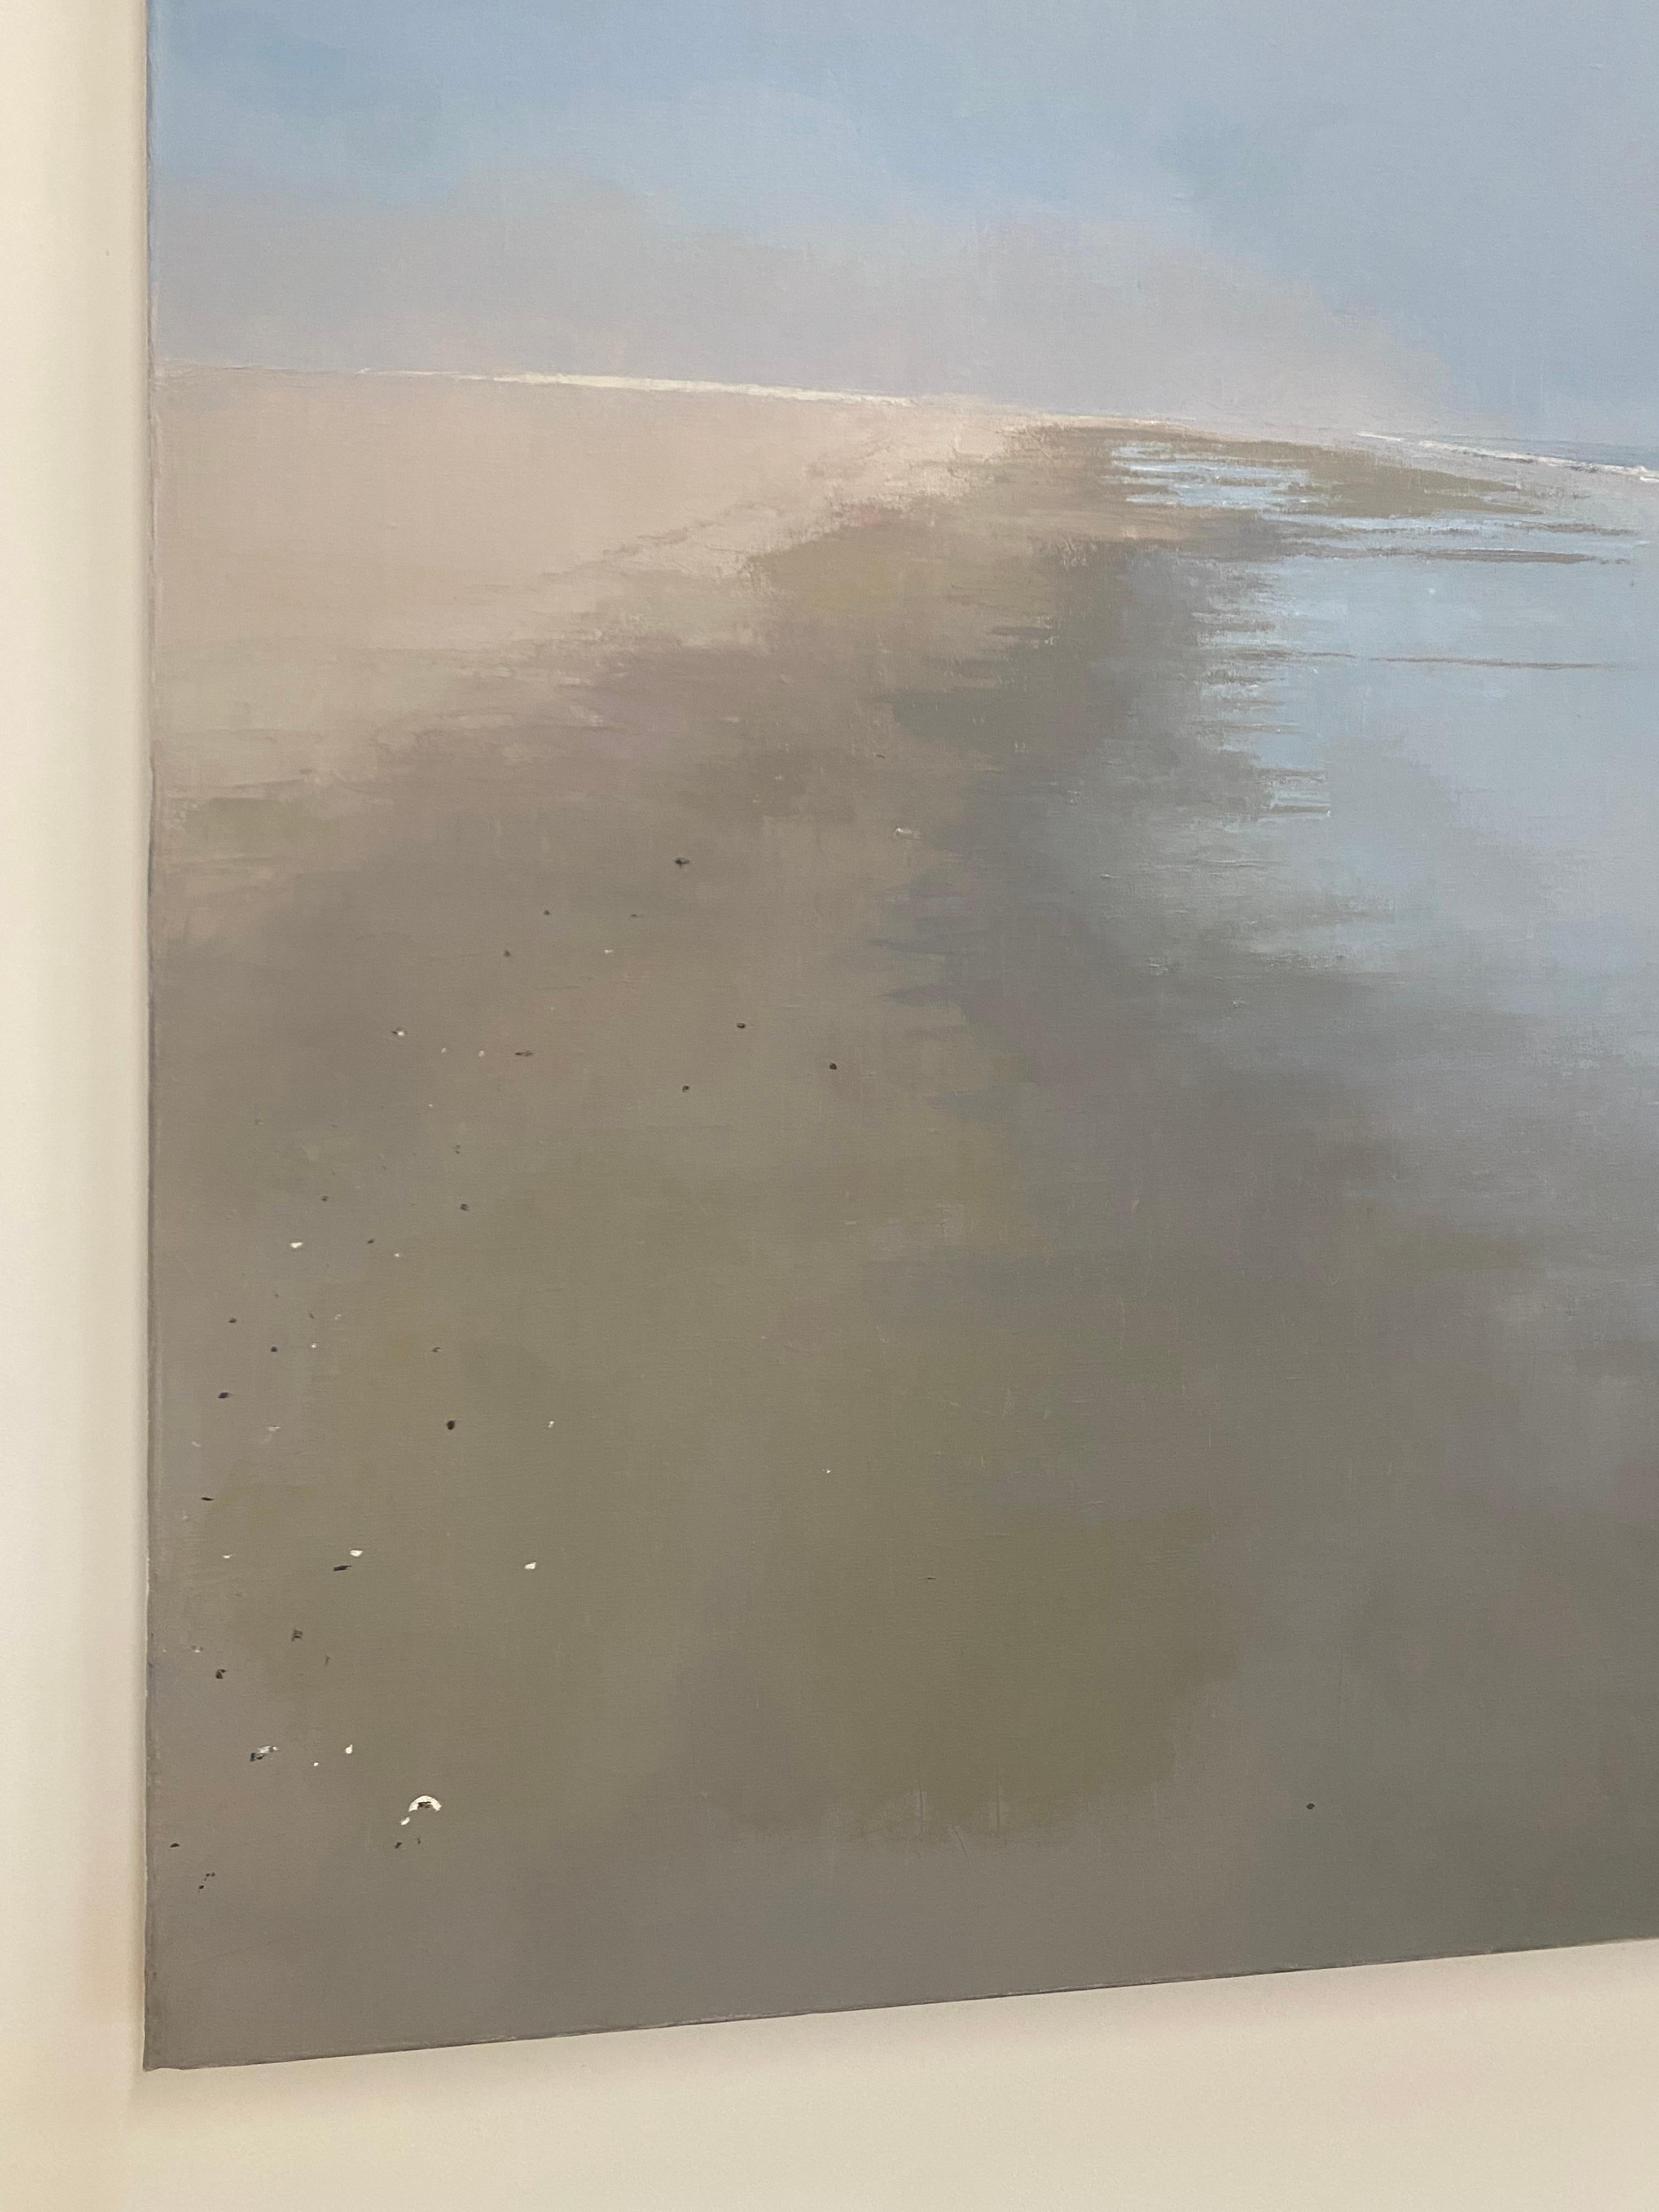 Paysage marin avec brouillard, plage, mer, gris, ciel bleu pâle, paysage de plage brumeux, océan - Gris Landscape Painting par Thomas Sarrantonio